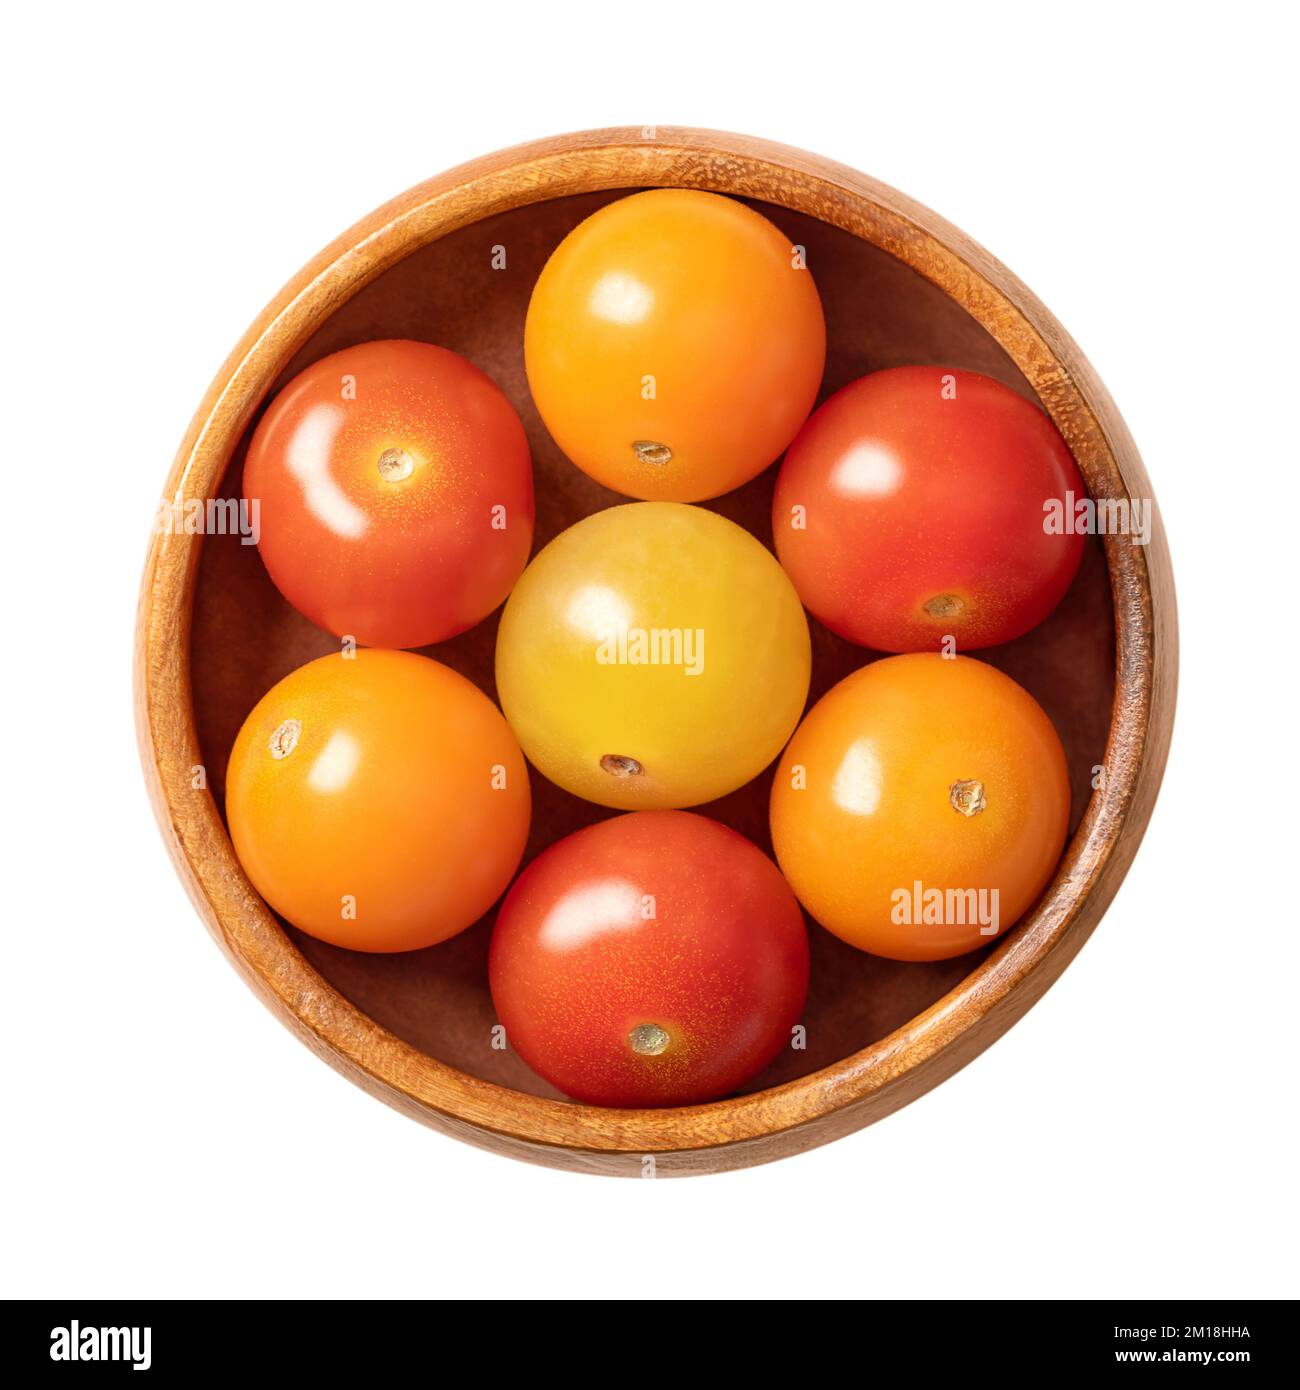 Tomates cerises colorées, dans un bol en bois. Type frais et mûr de petites tomates rondes, de couleur rouge, jaune et orange. Banque D'Images